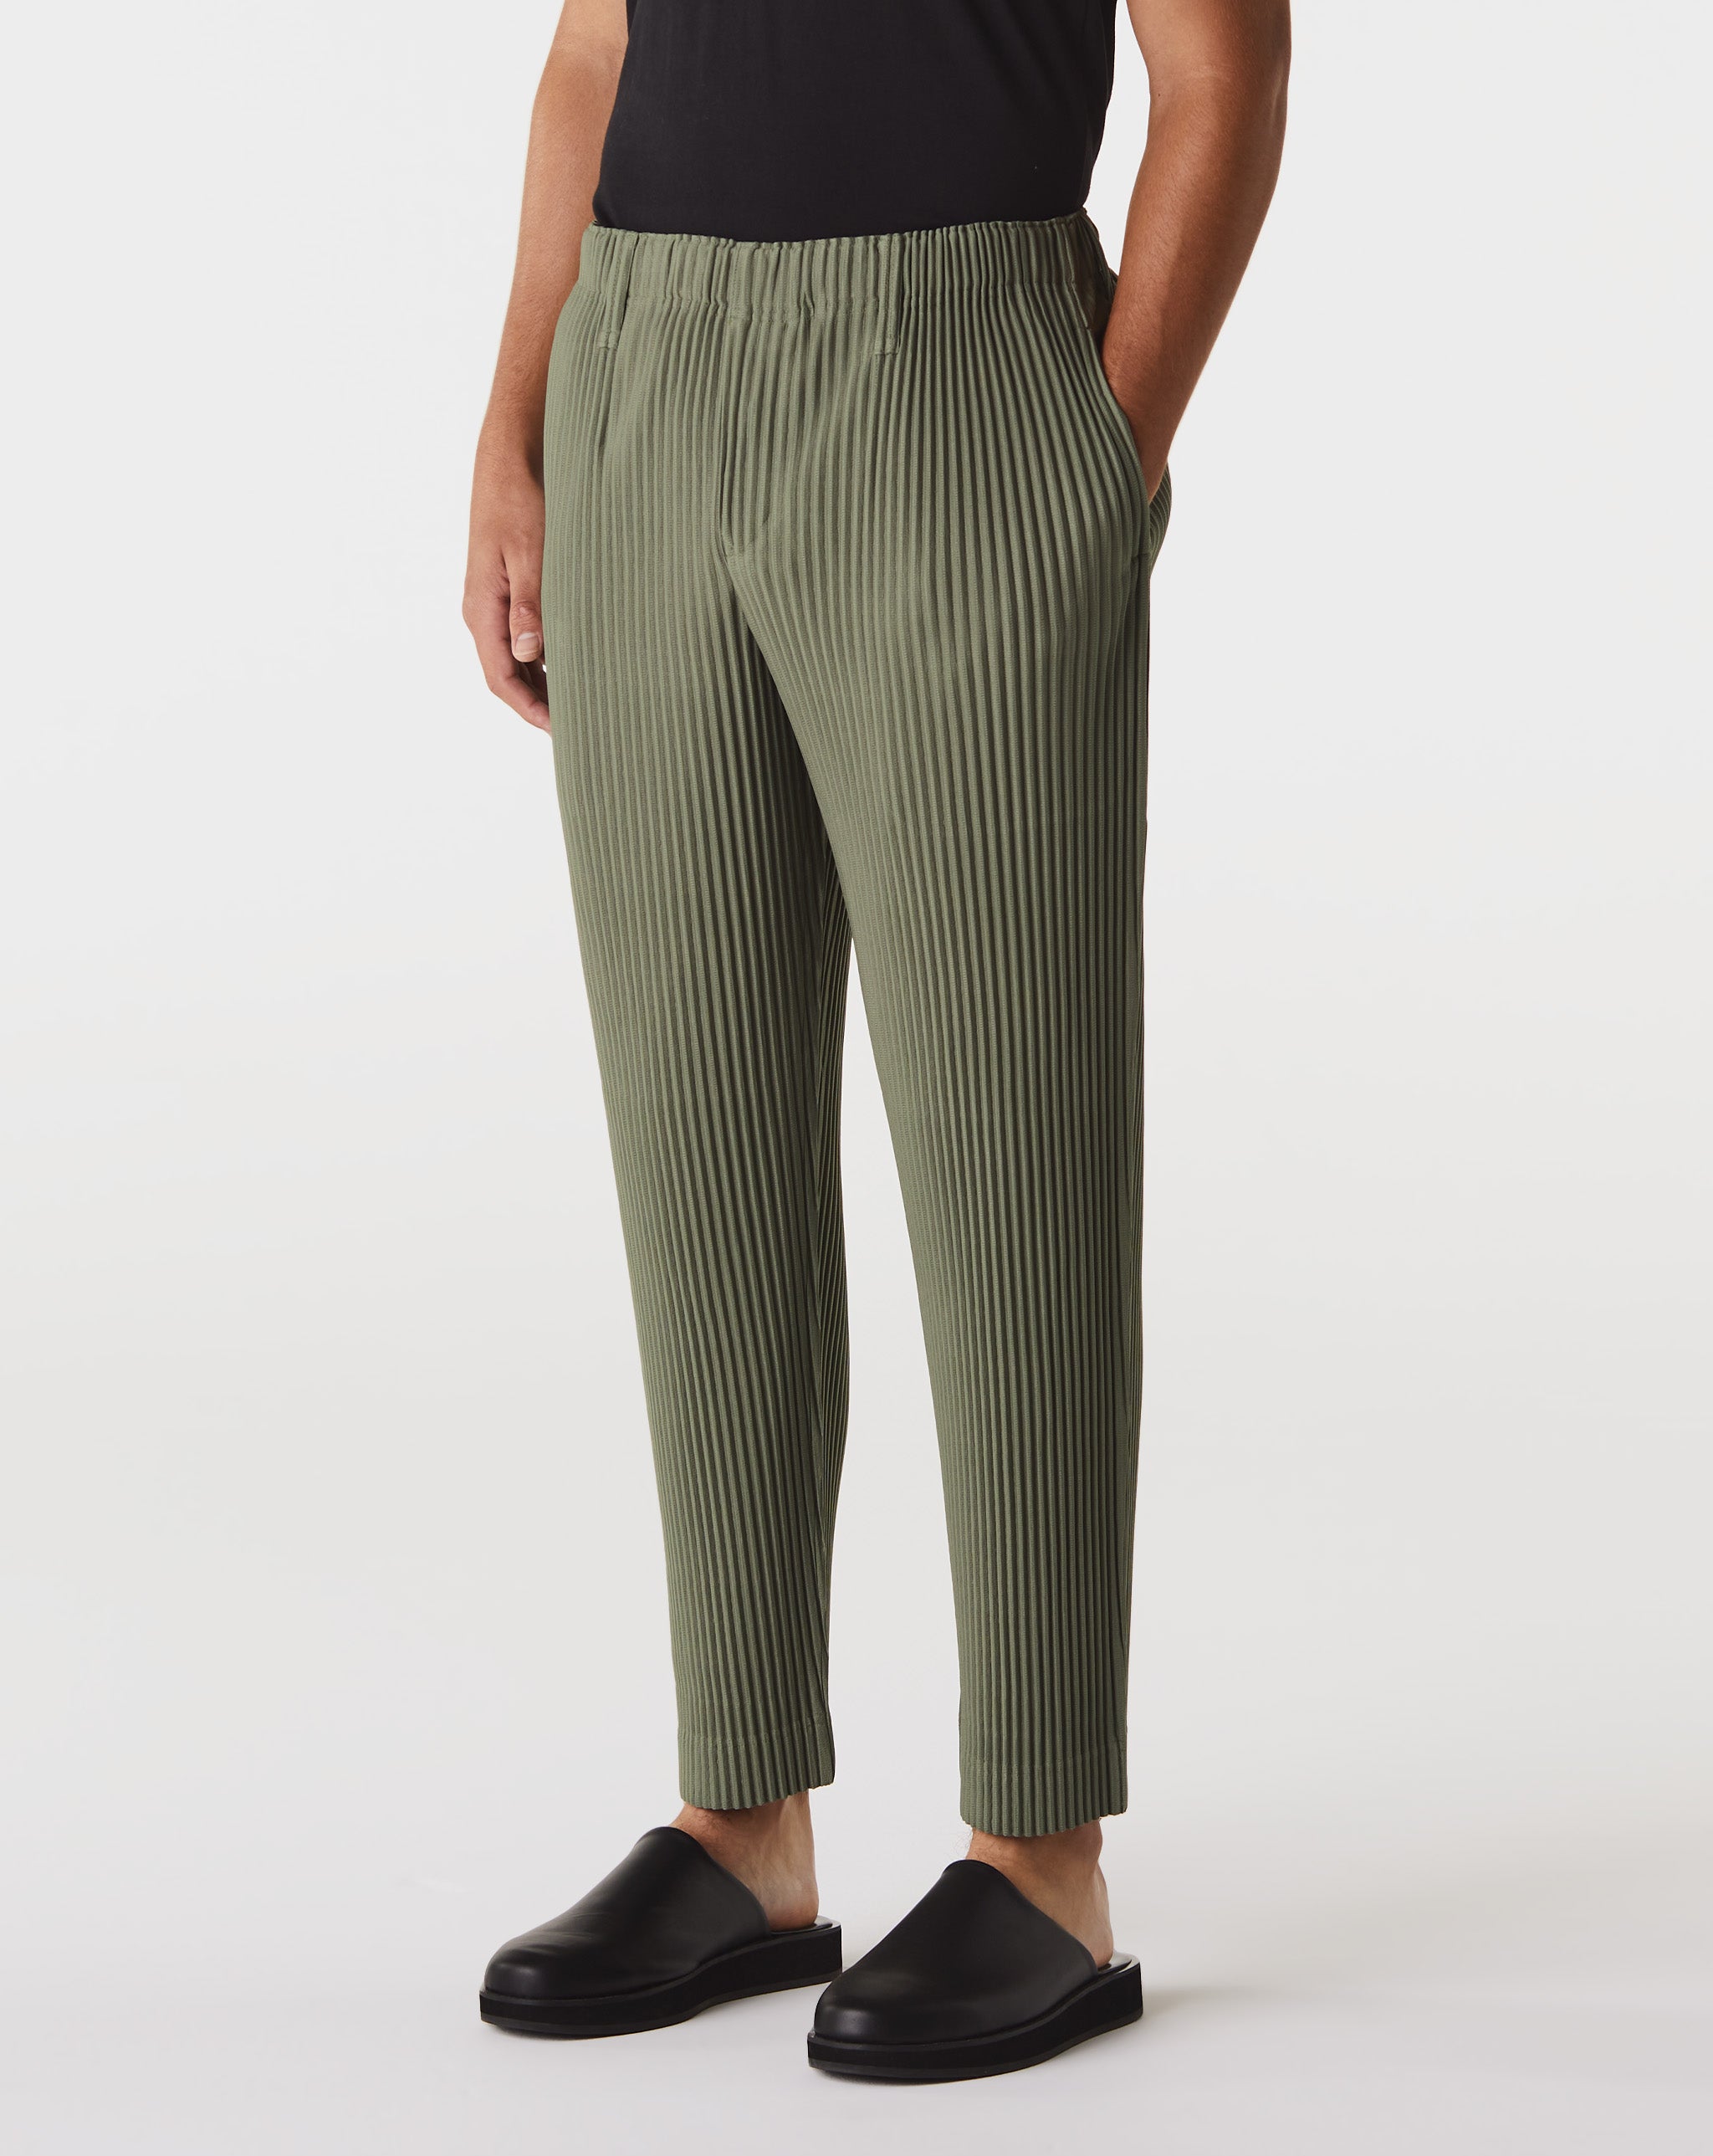 Tech Pack Woven Utility Shorts Color Pleats Pants  - Cheap Cerbe Jordan outlet